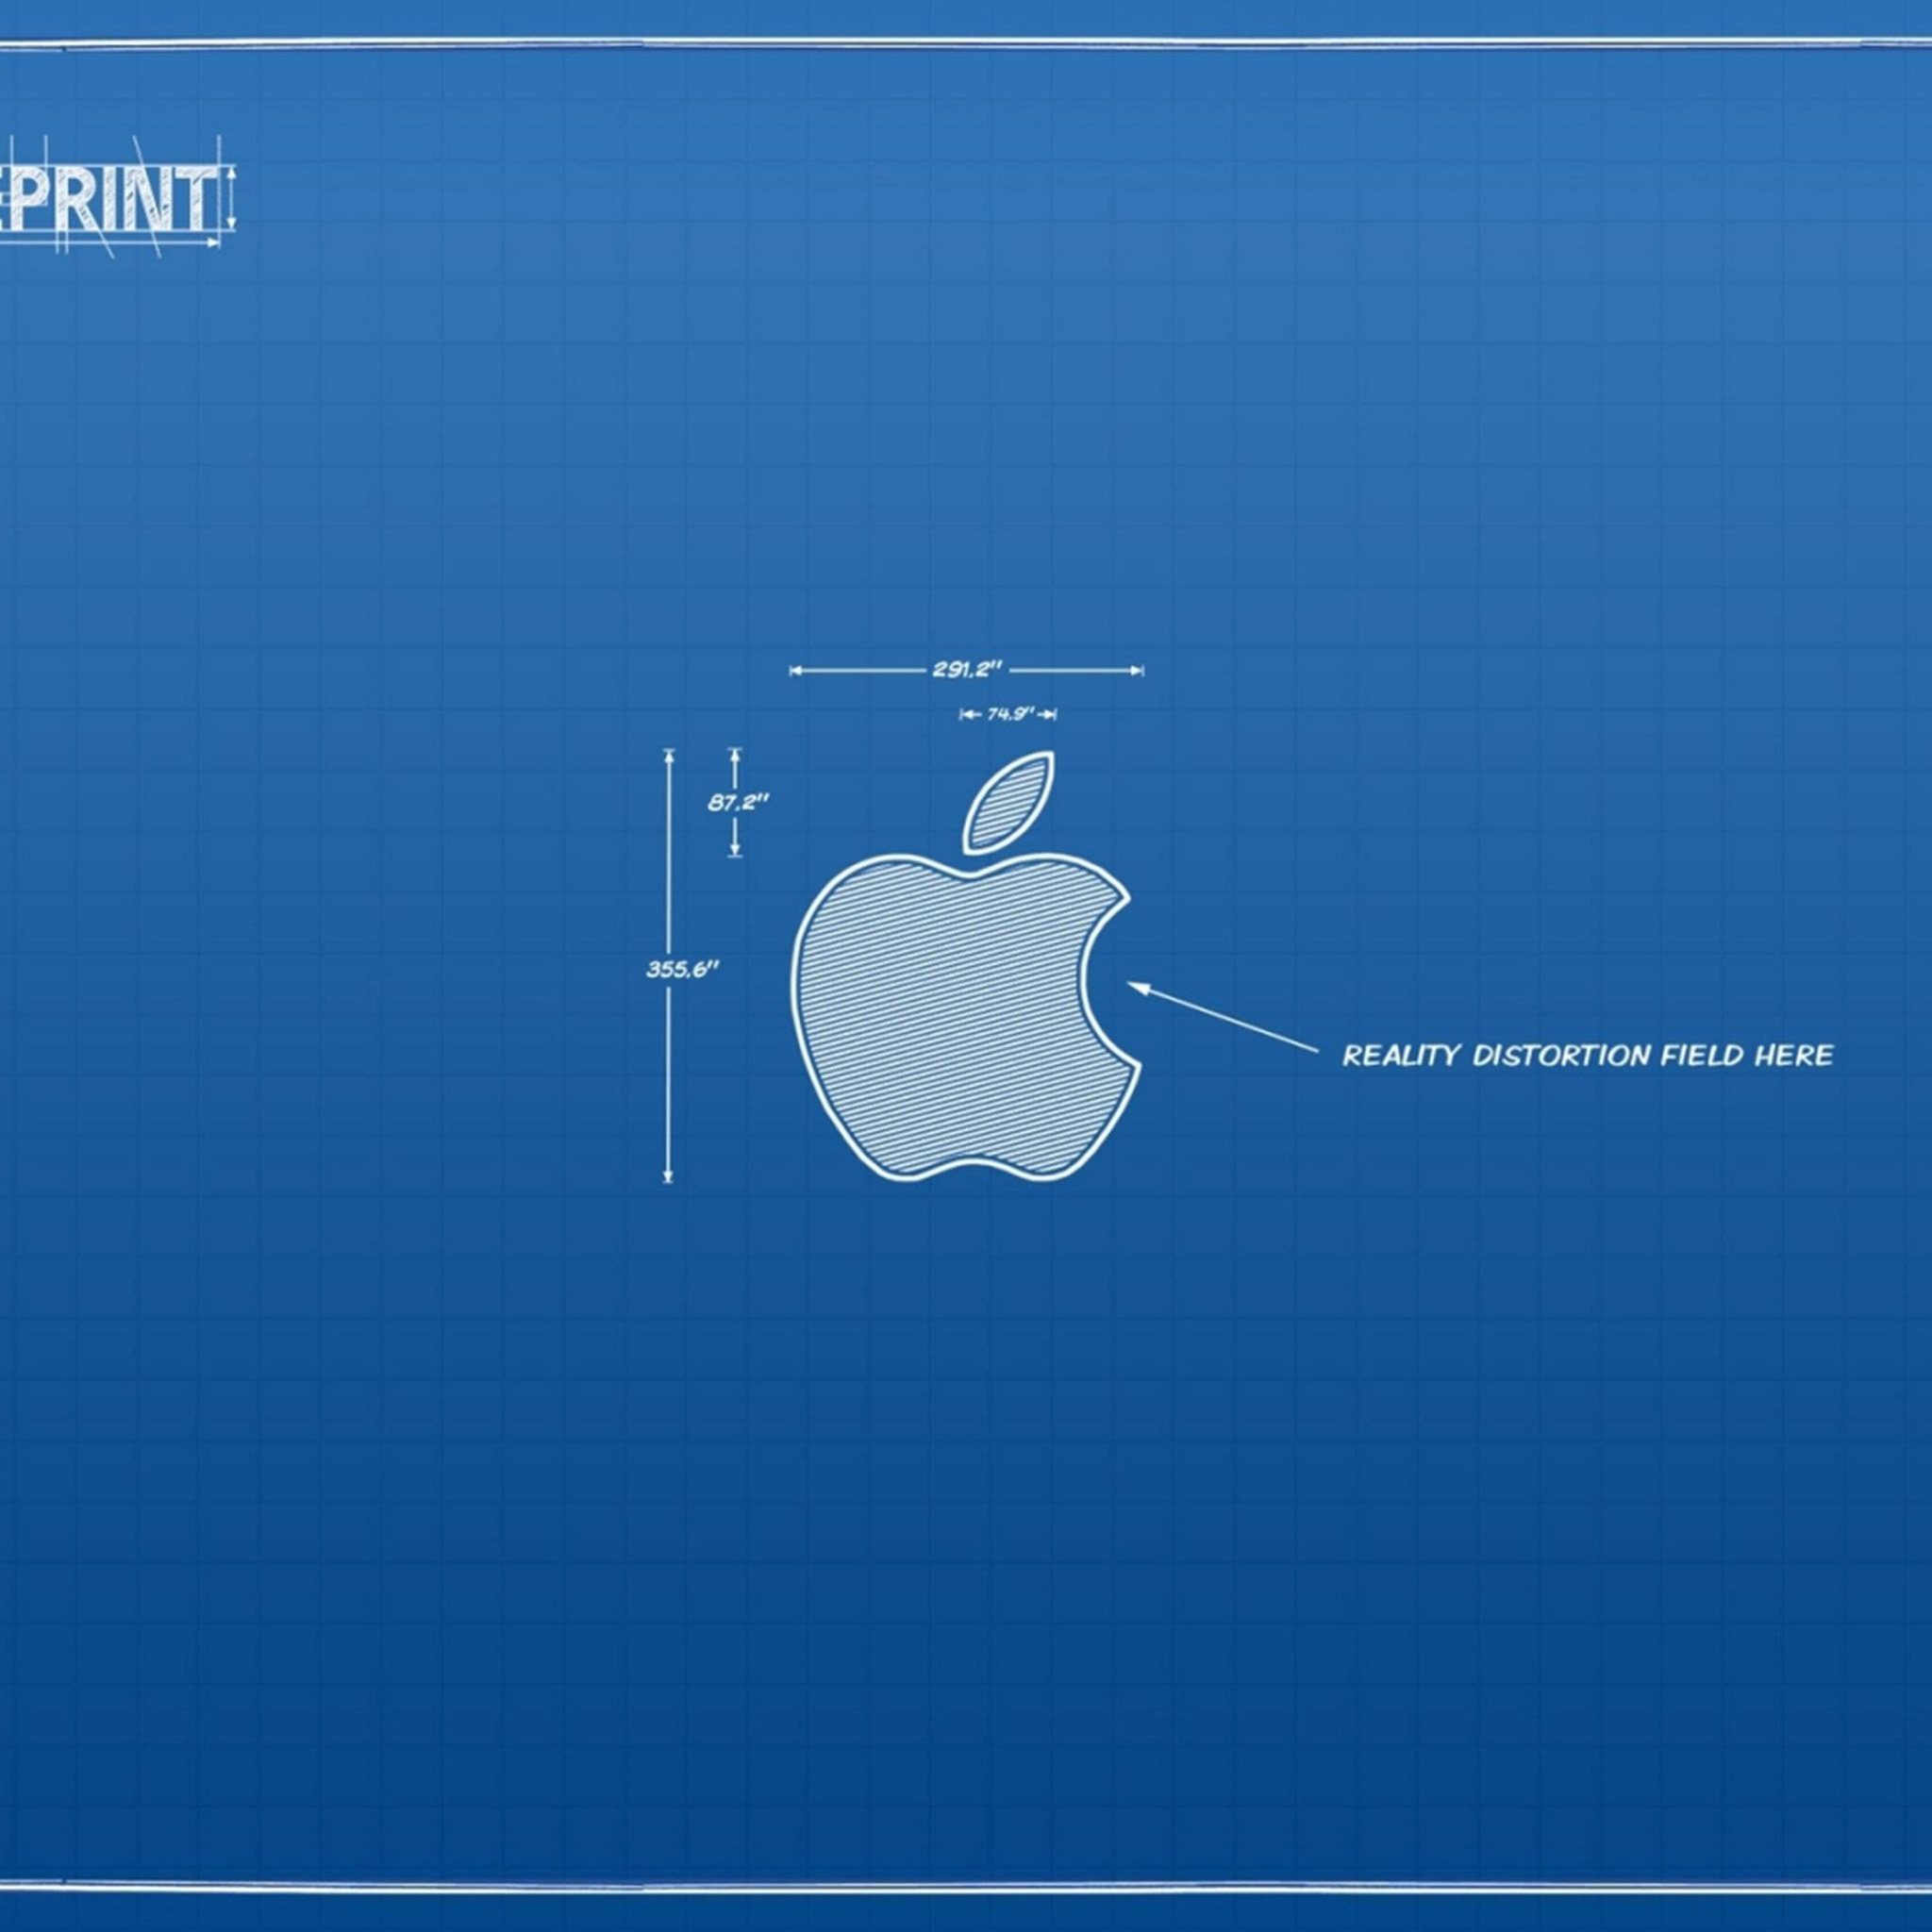 46+] Apple iPad Air 2 Wallpaper - WallpaperSafari